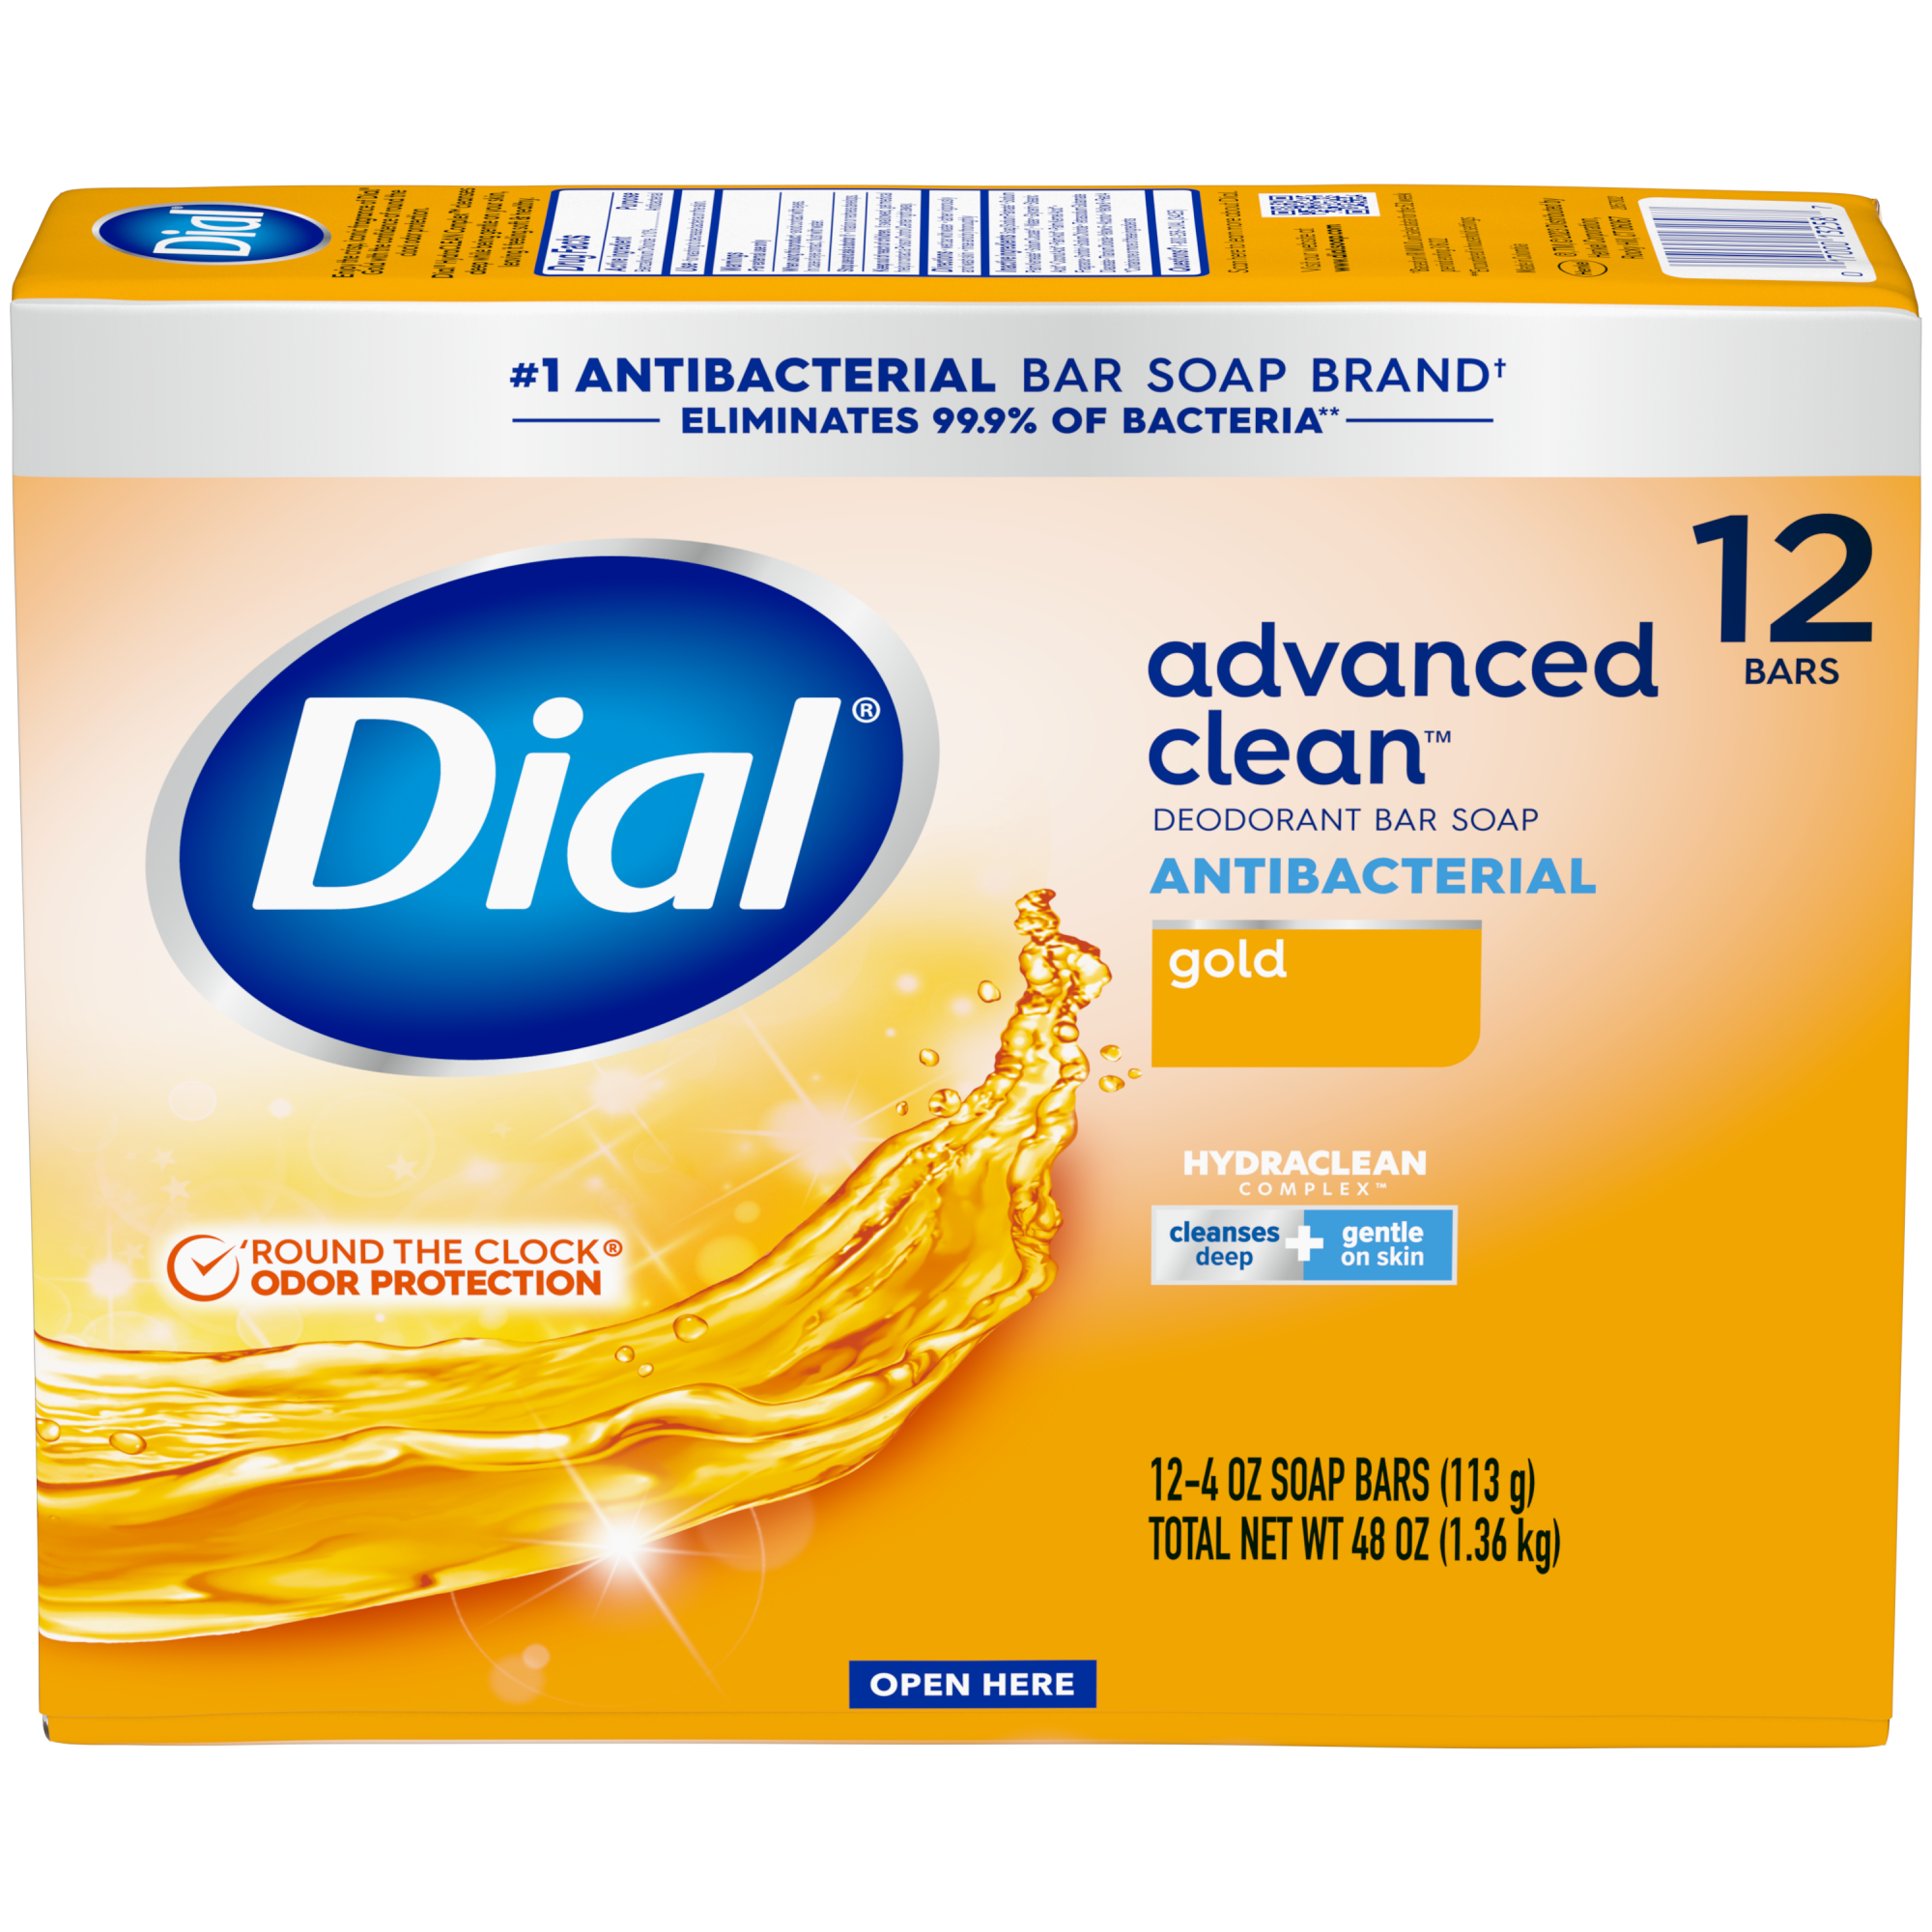 Dial Antibacterial Deodorant Bar Soap, Advanced Clean, Gold, 4 oz, 12 Bars - image 10 of 10